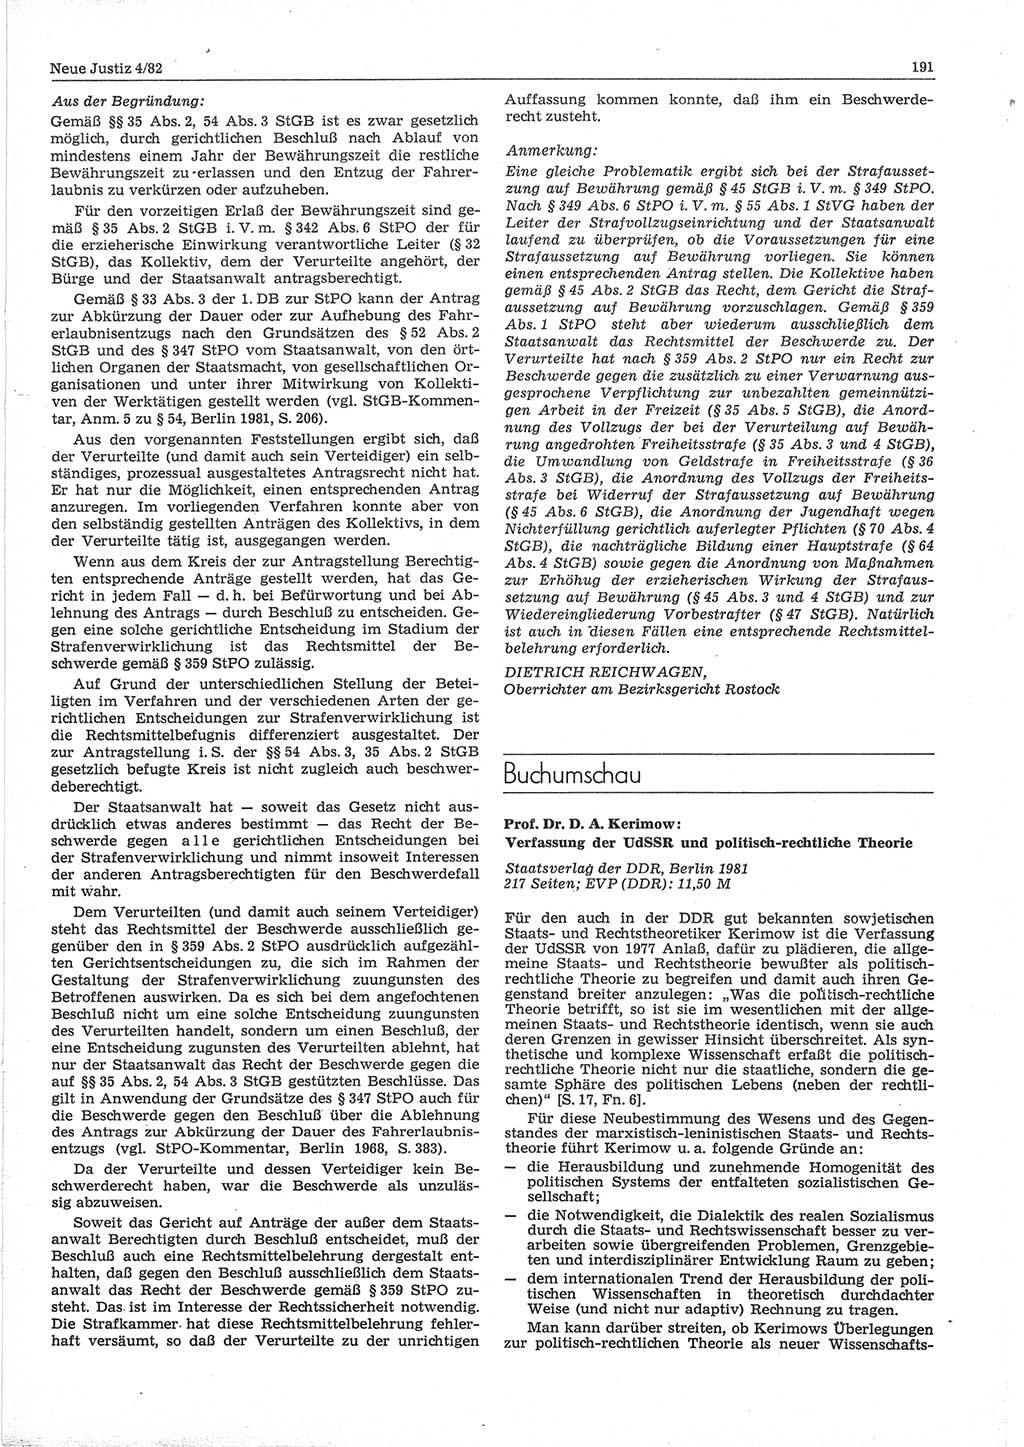 Neue Justiz (NJ), Zeitschrift für sozialistisches Recht und Gesetzlichkeit [Deutsche Demokratische Republik (DDR)], 36. Jahrgang 1982, Seite 191 (NJ DDR 1982, S. 191)